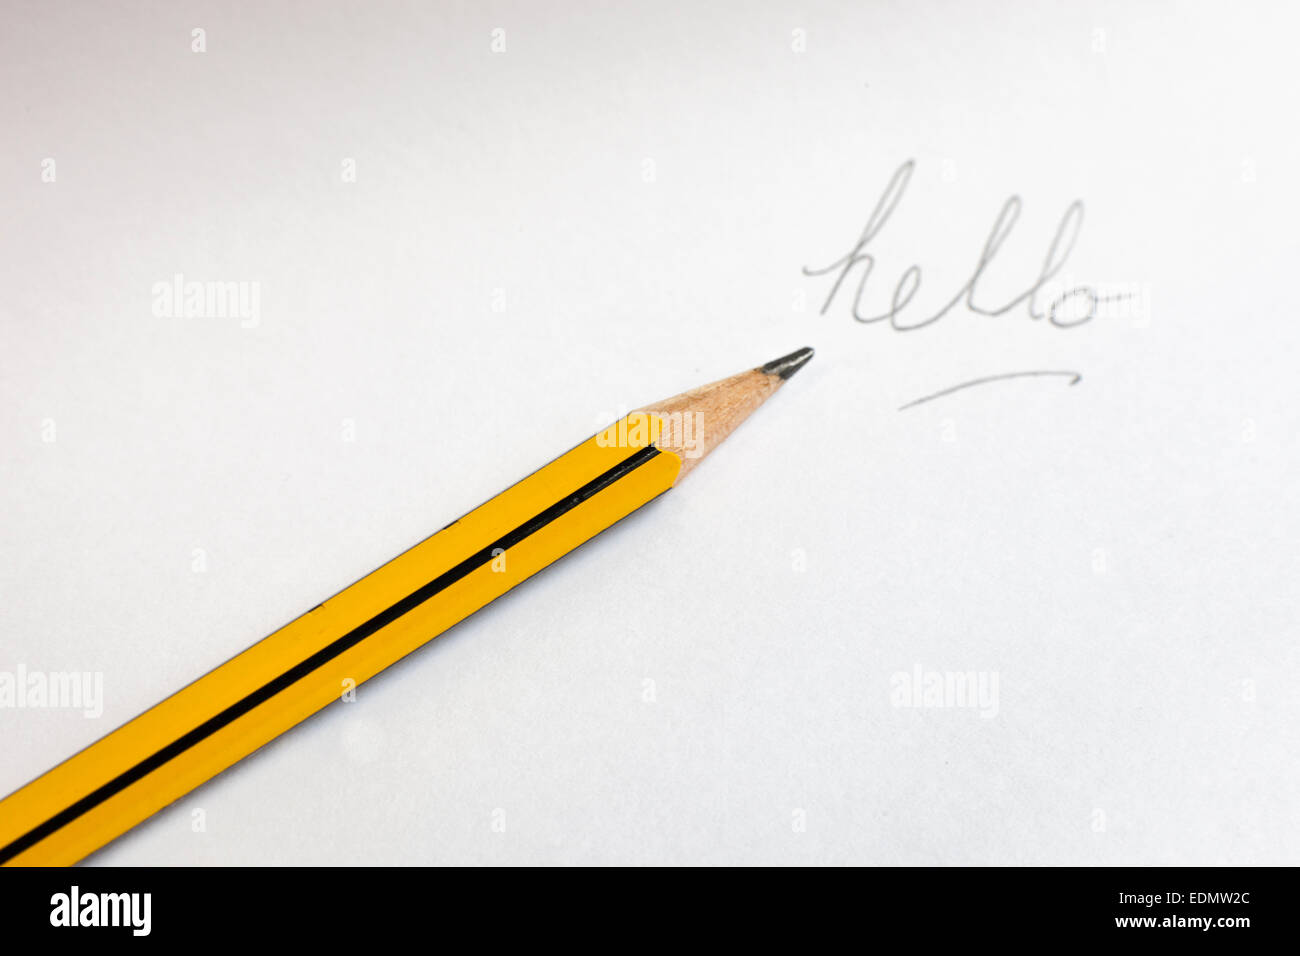 Una matita rivolto la parola "hello" scritto su carta Foto Stock